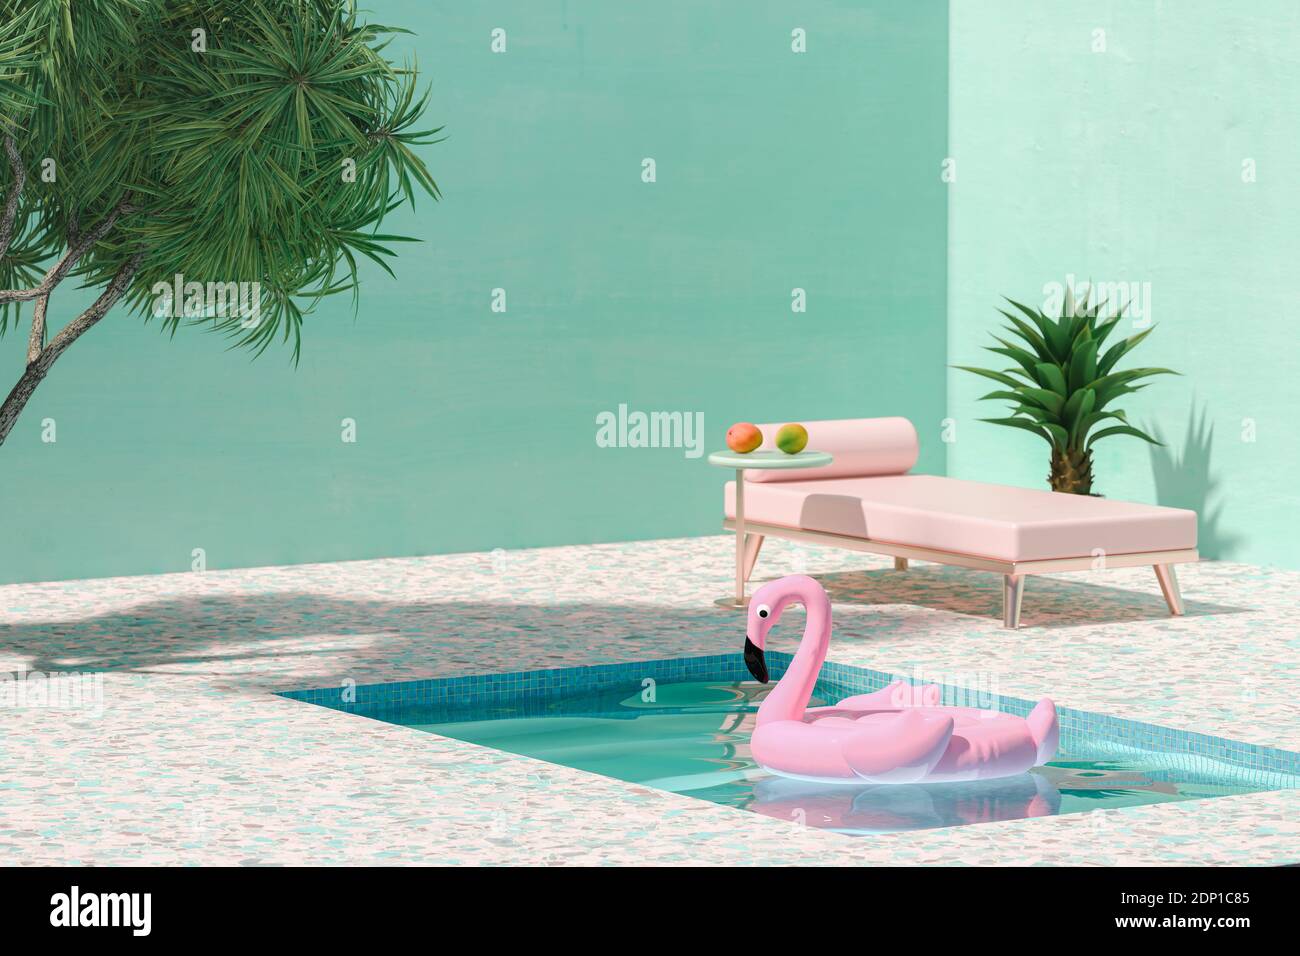 Fenicottero giocattolo rosa che galleggia sulla piscina accanto al lettino solare e. palme Foto Stock